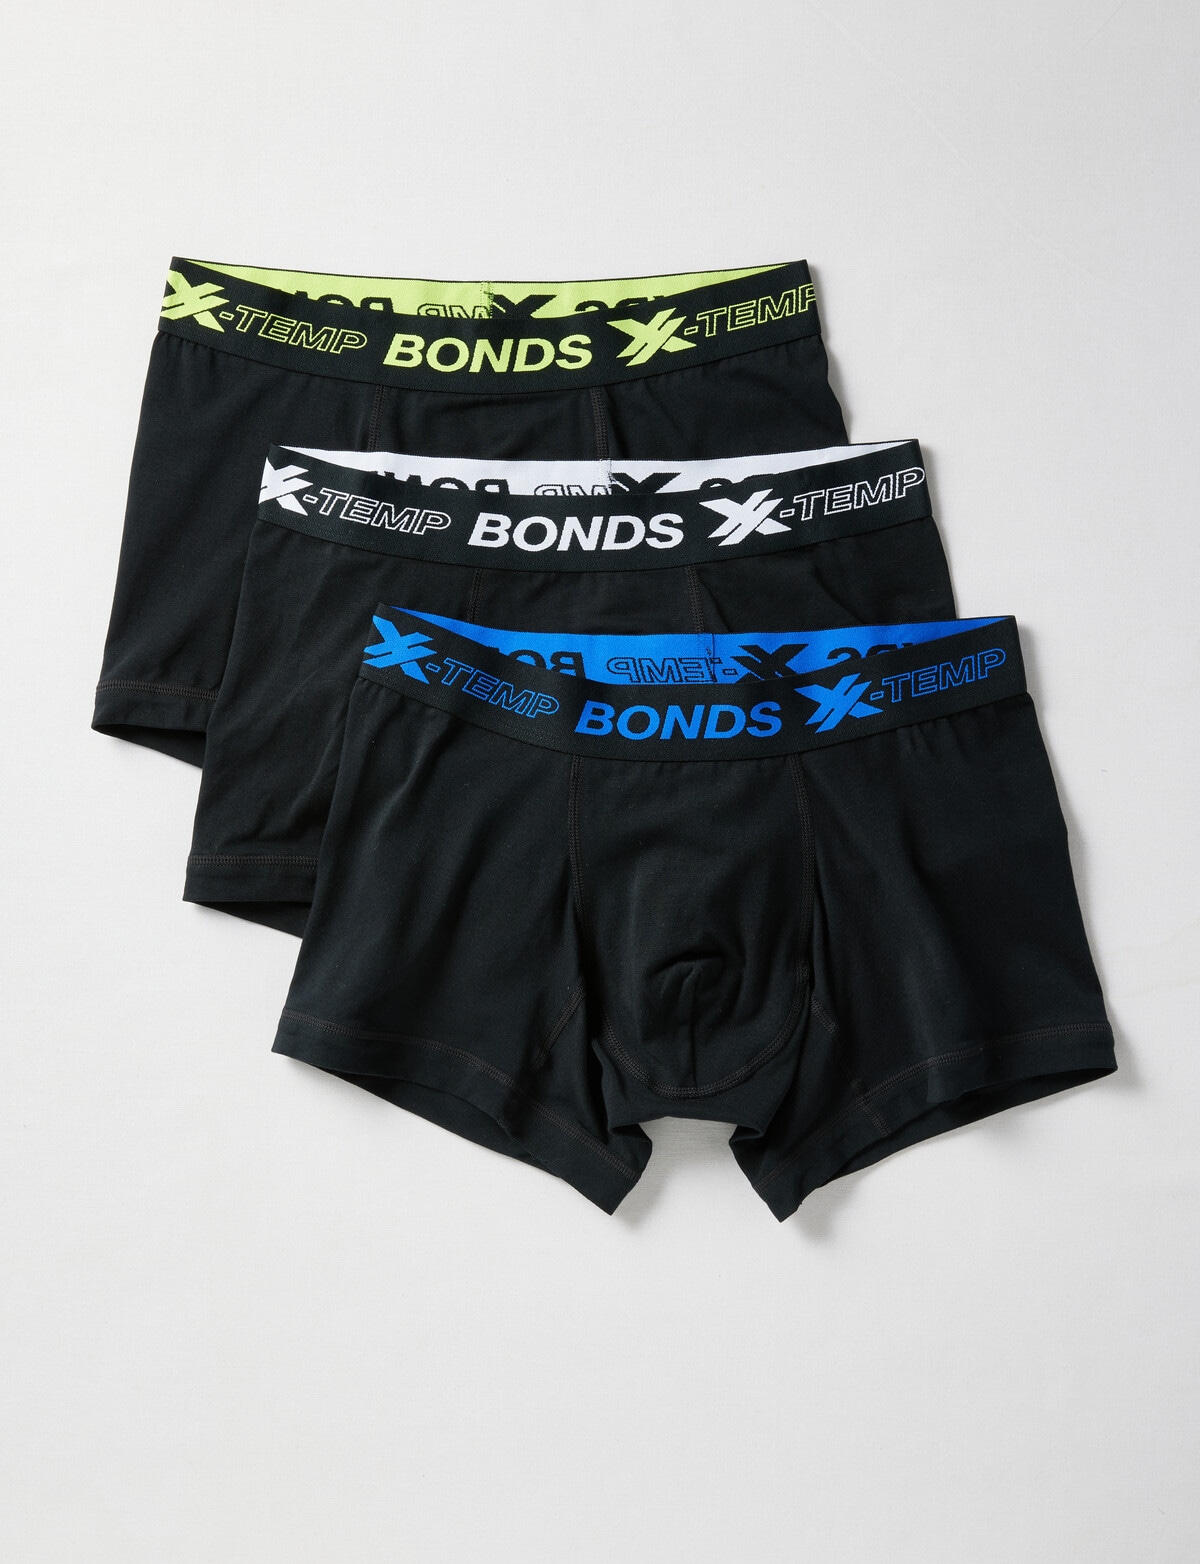 3 x Bonds Mens Everyday Trunks Underwear Black Cotton/Elastane